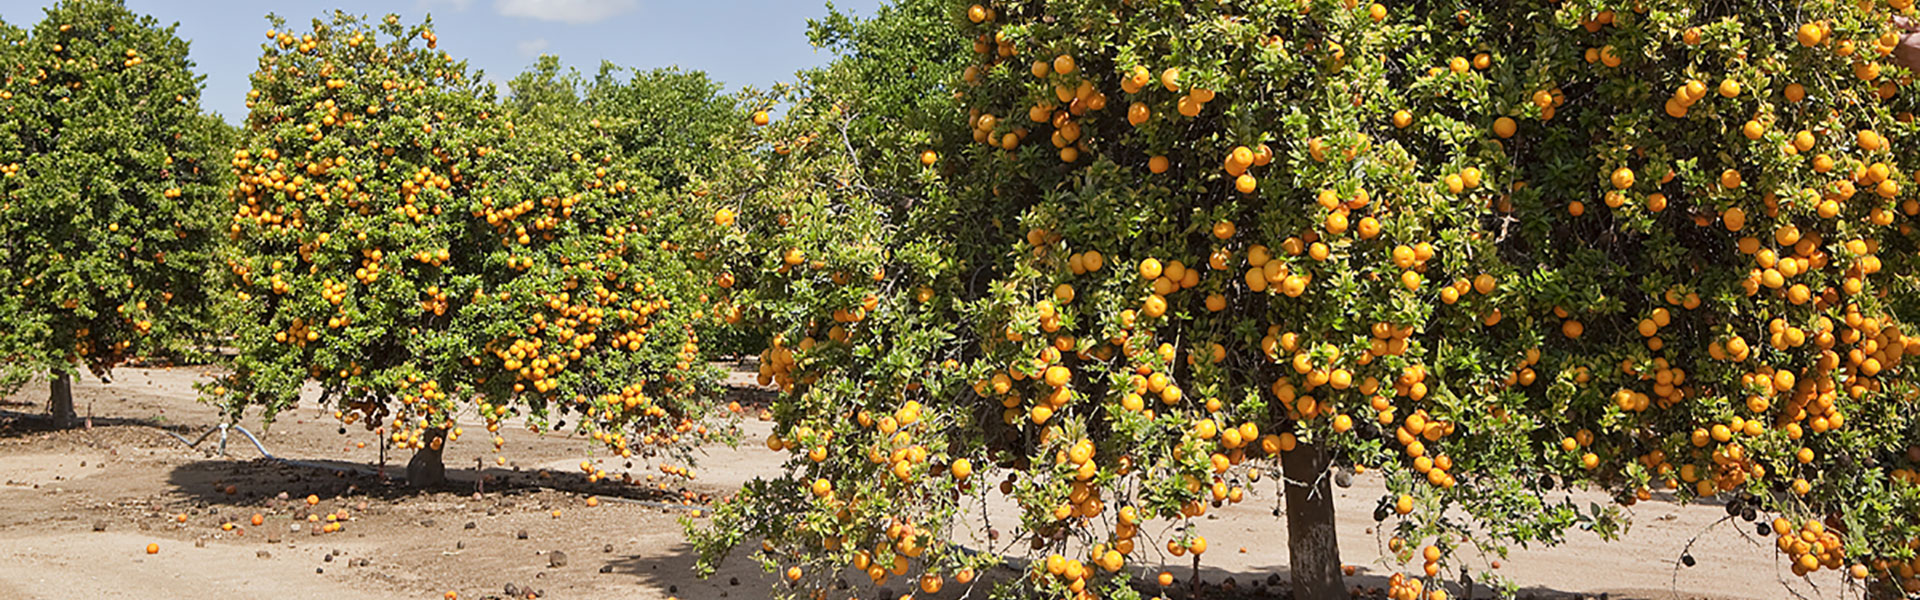 фрукты растущие в египте